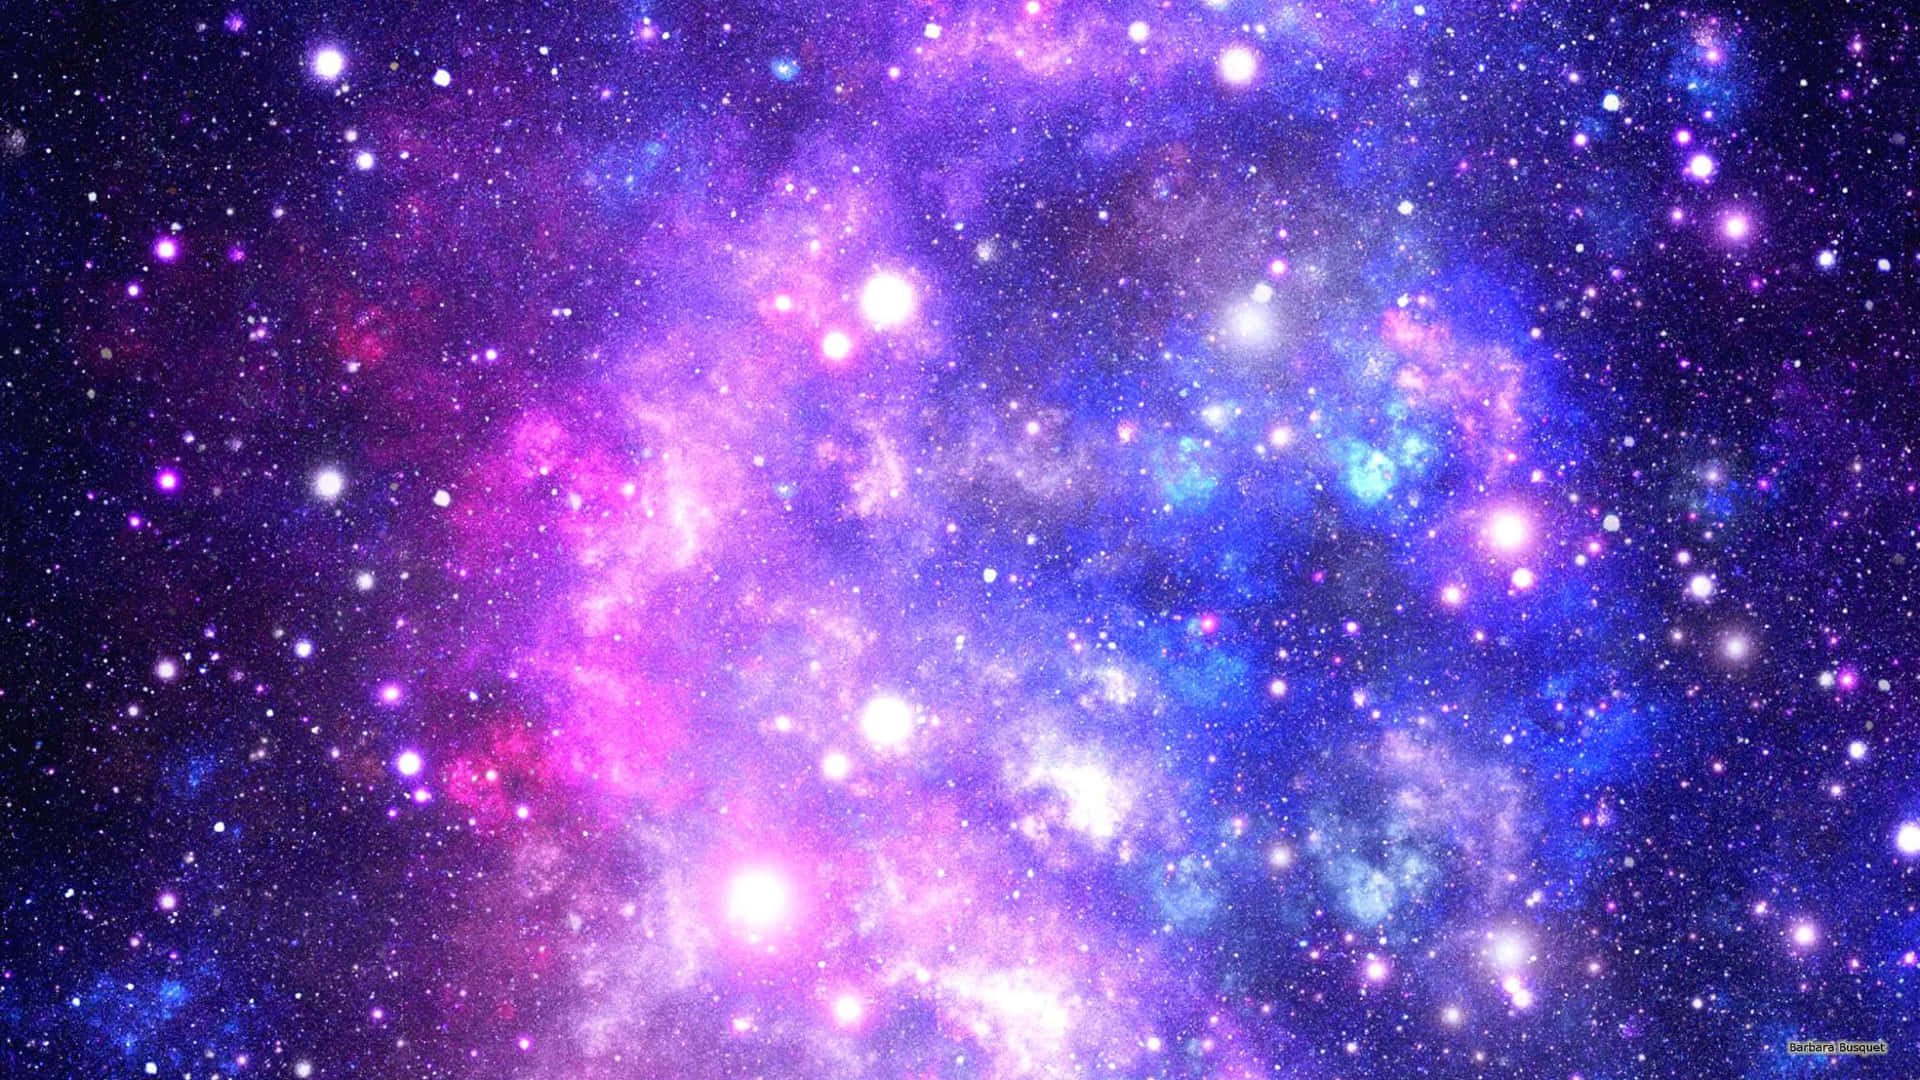 Degalaktiska Underverken I Det Trippiga Universumet Wallpaper